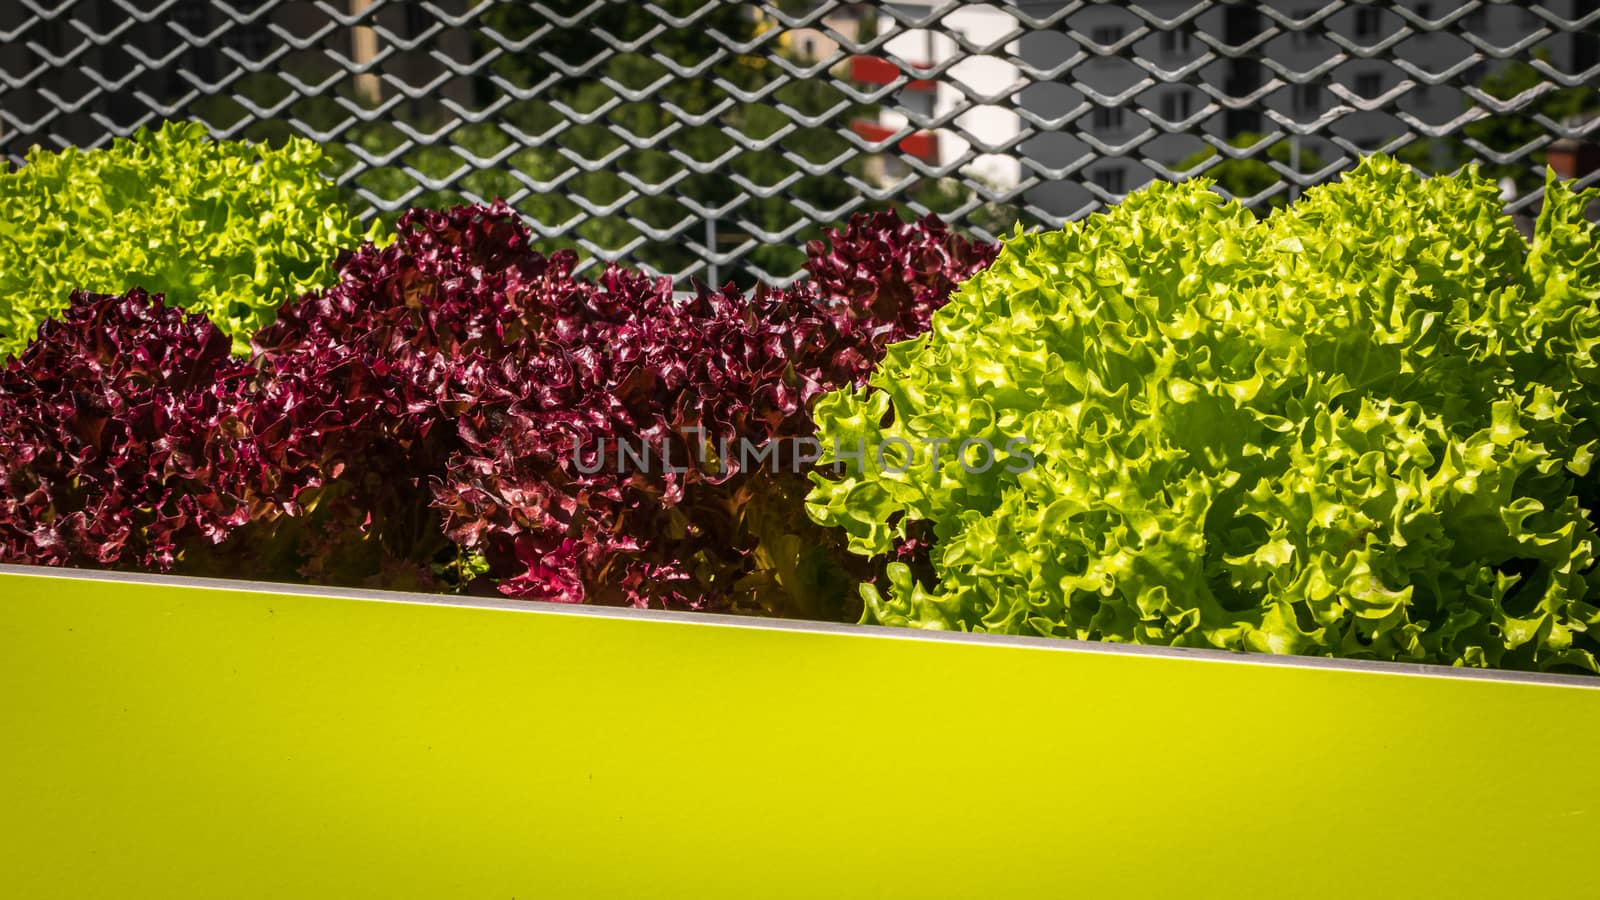 Urban gardening - Lollo bionda and Lollo rosso lettuce in stylish planters on a terrace in Vienna (Austria)